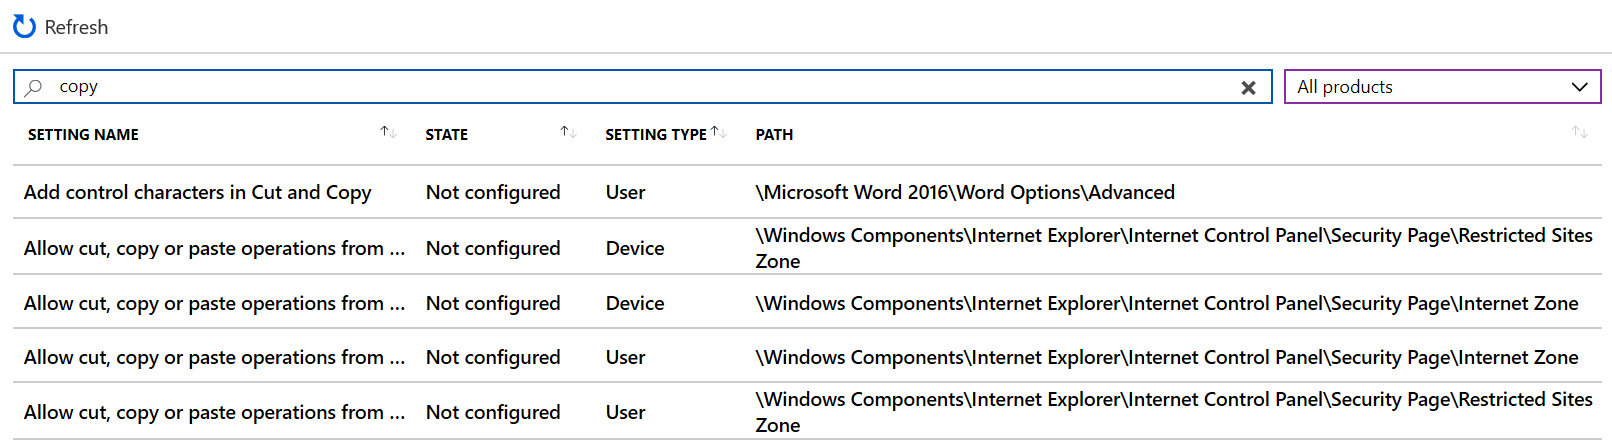 Microsoft Intune 및 Intune 관리 센터의 관리 템플릿에 있는 모든 디바이스 설정을 표시하는 복사용 Search.